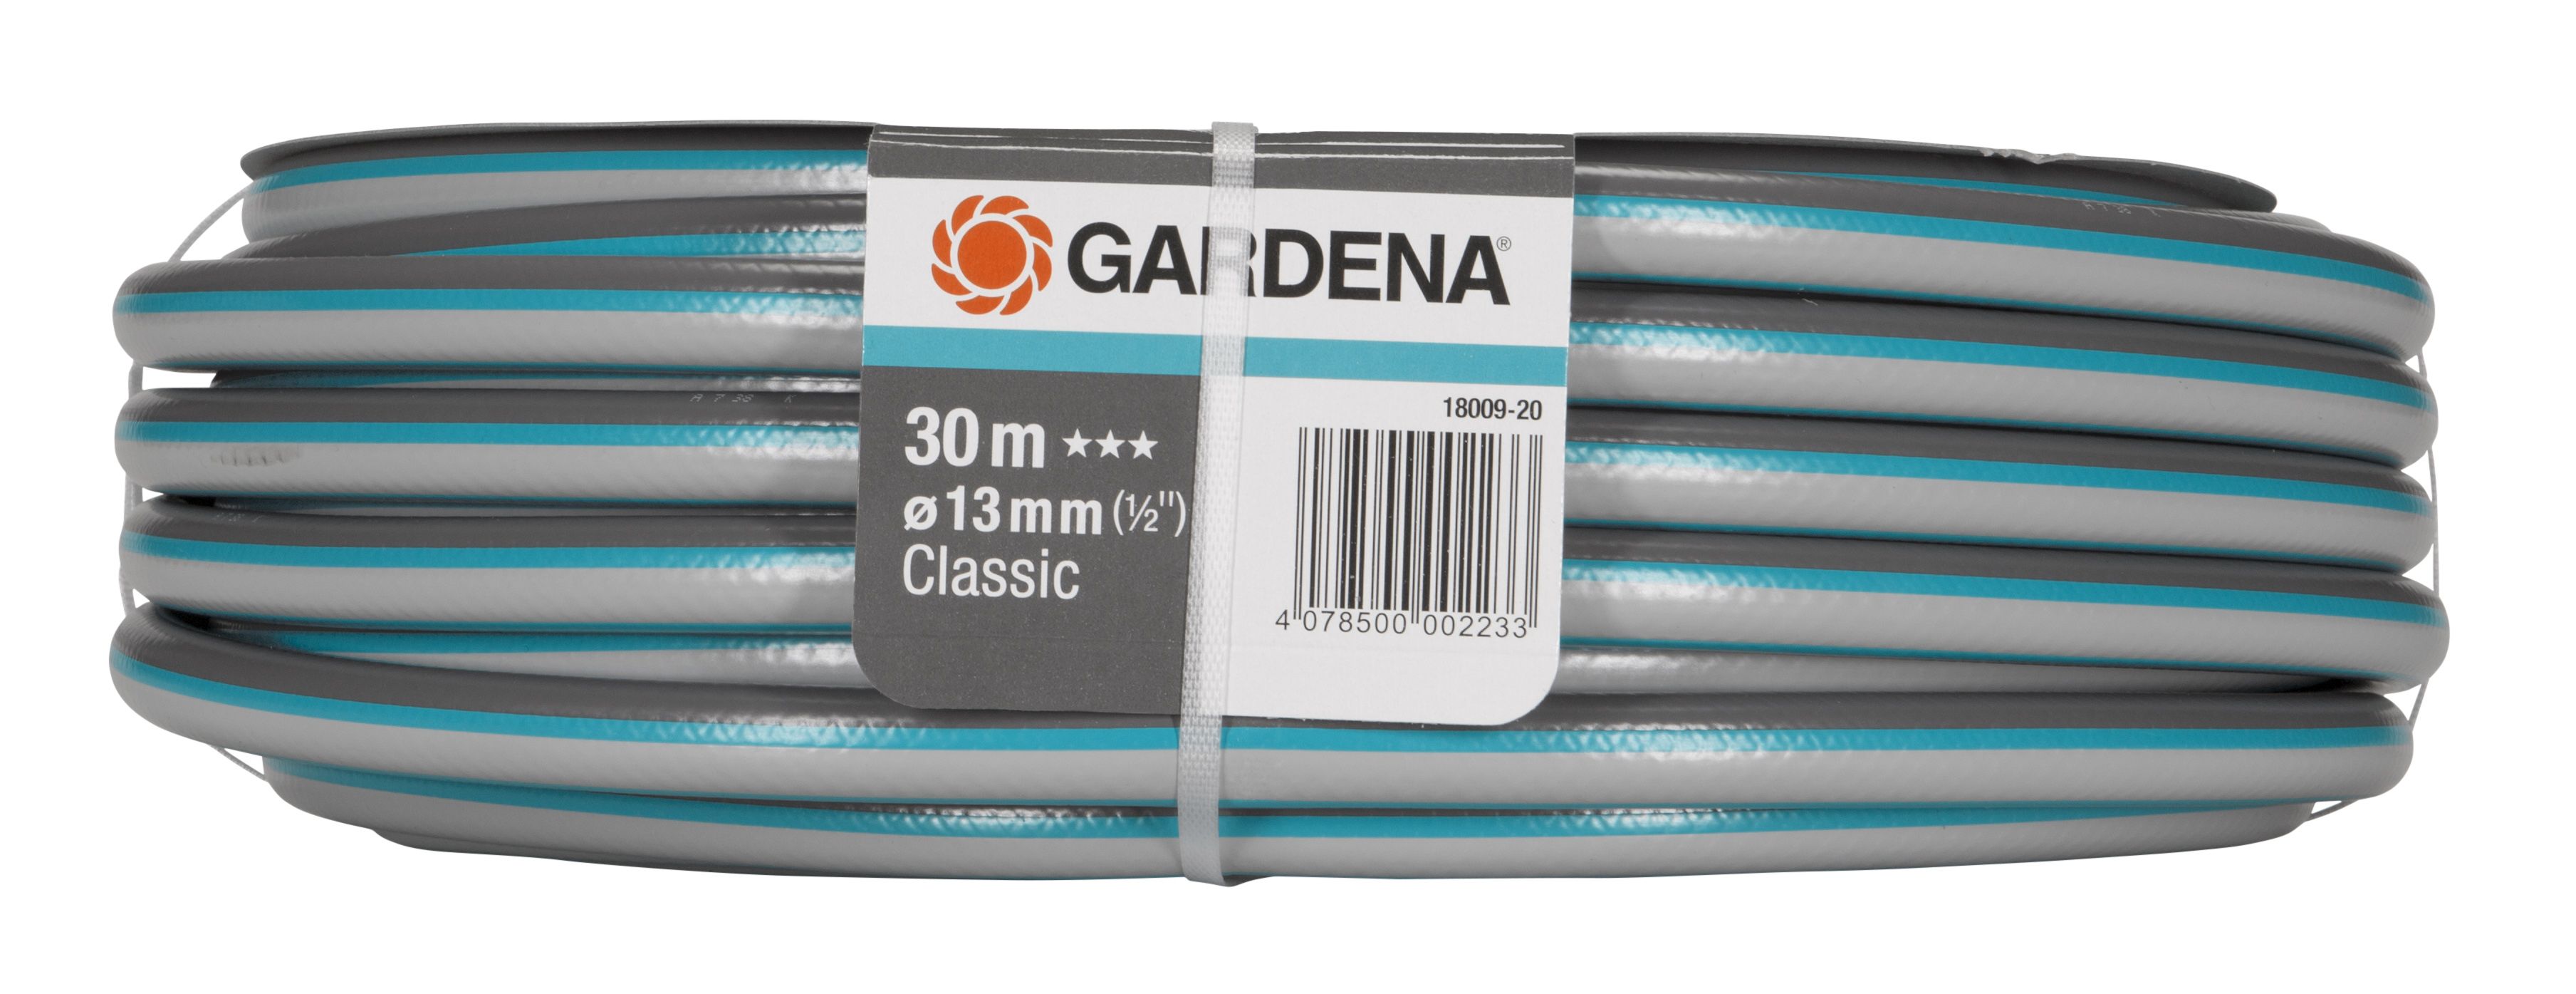 Gardena 18009-28 Blue Multi-purpose Hose pipe (D)½" x (L)30m